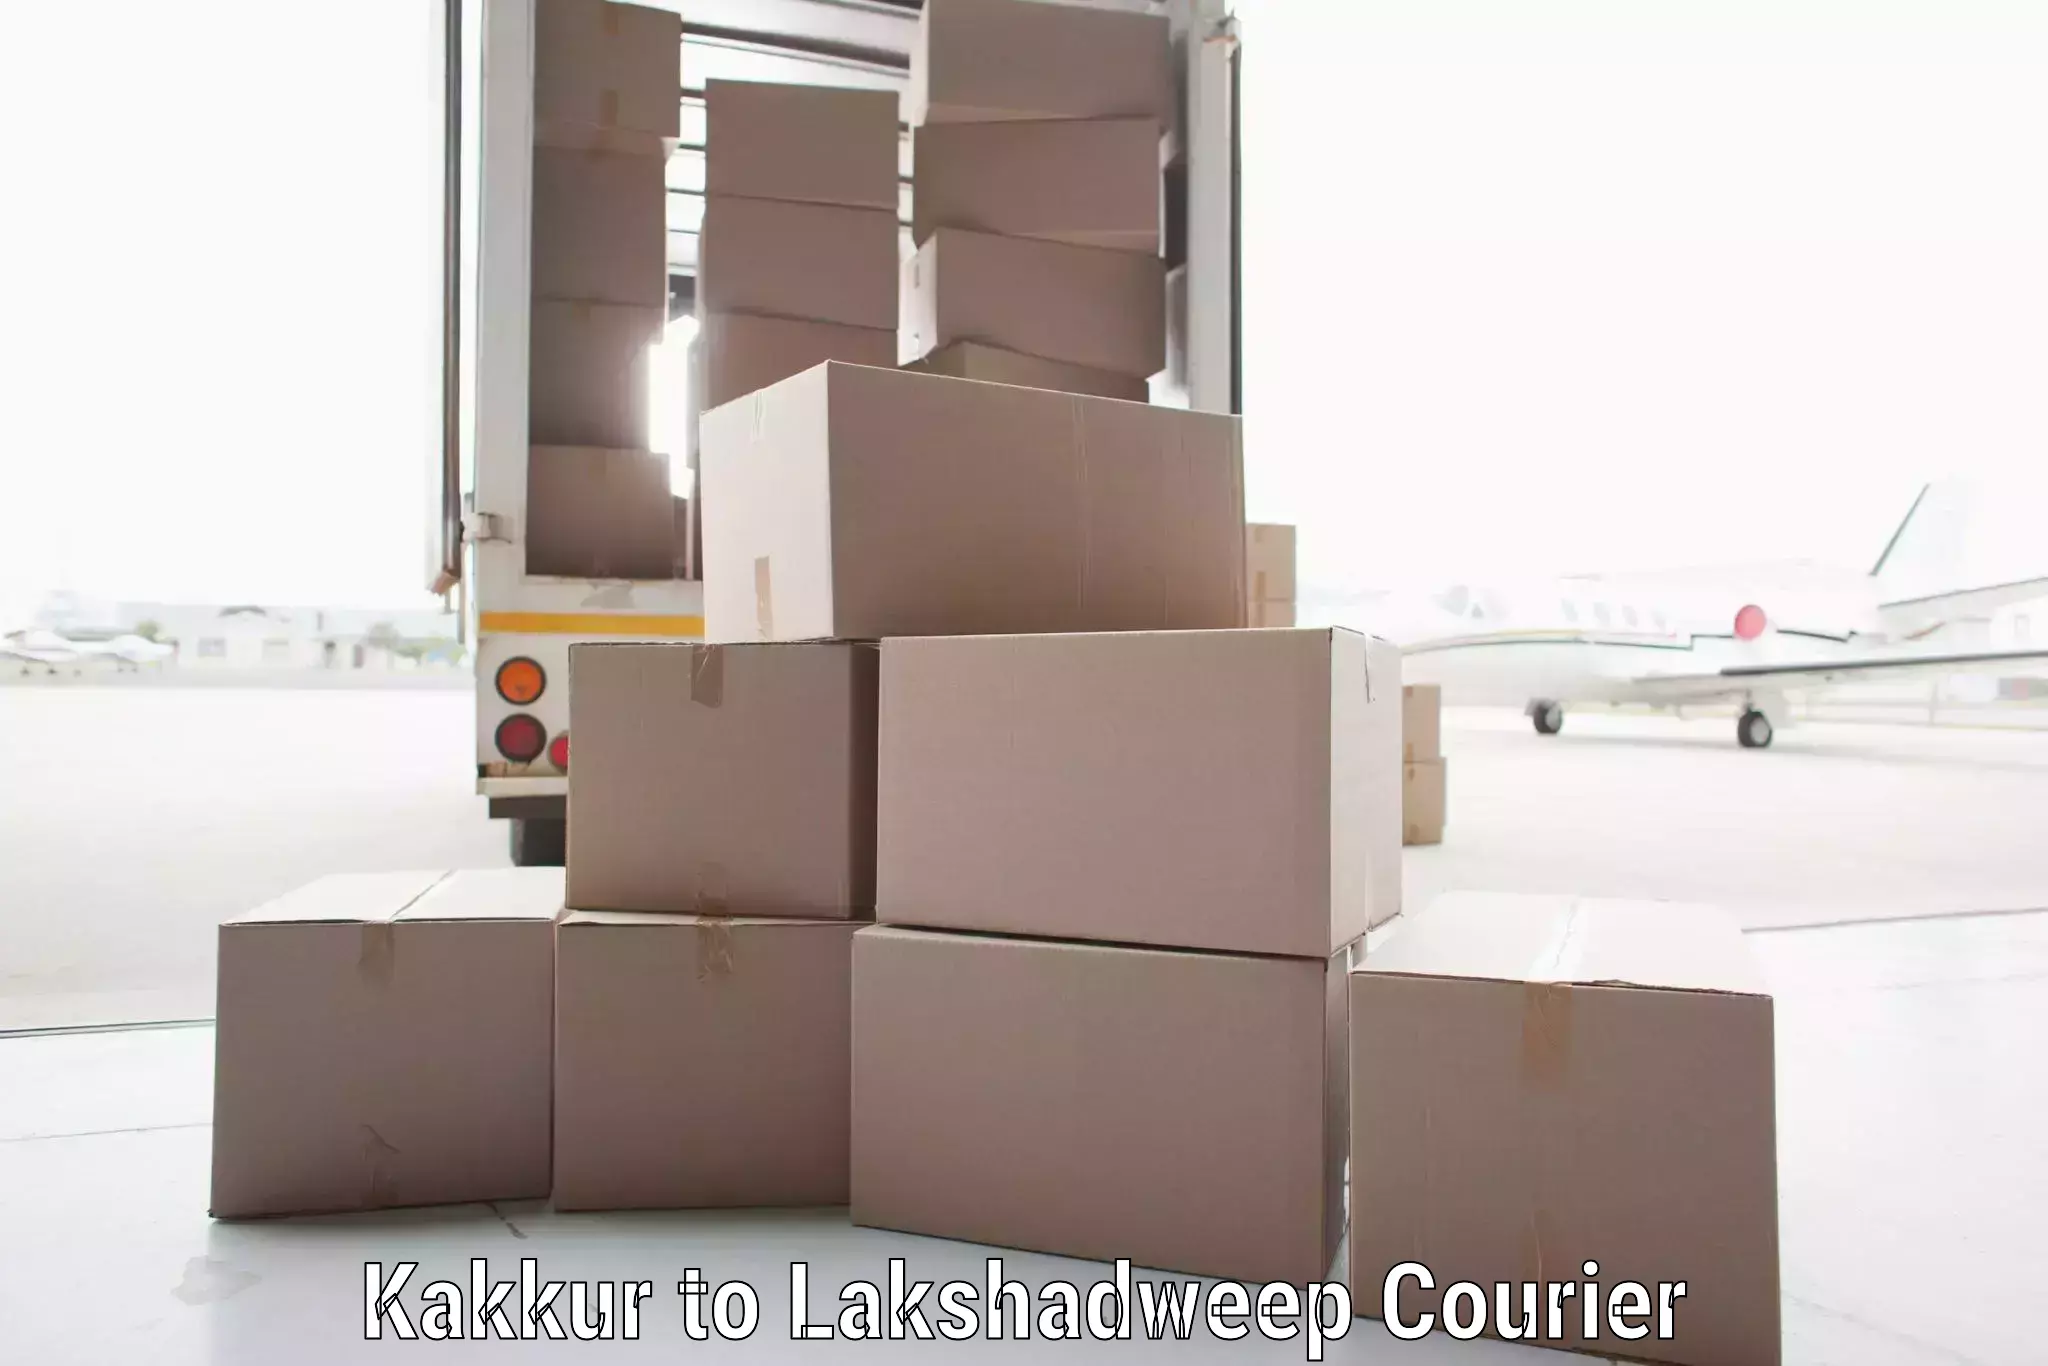 Tech-enabled shipping Kakkur to Lakshadweep